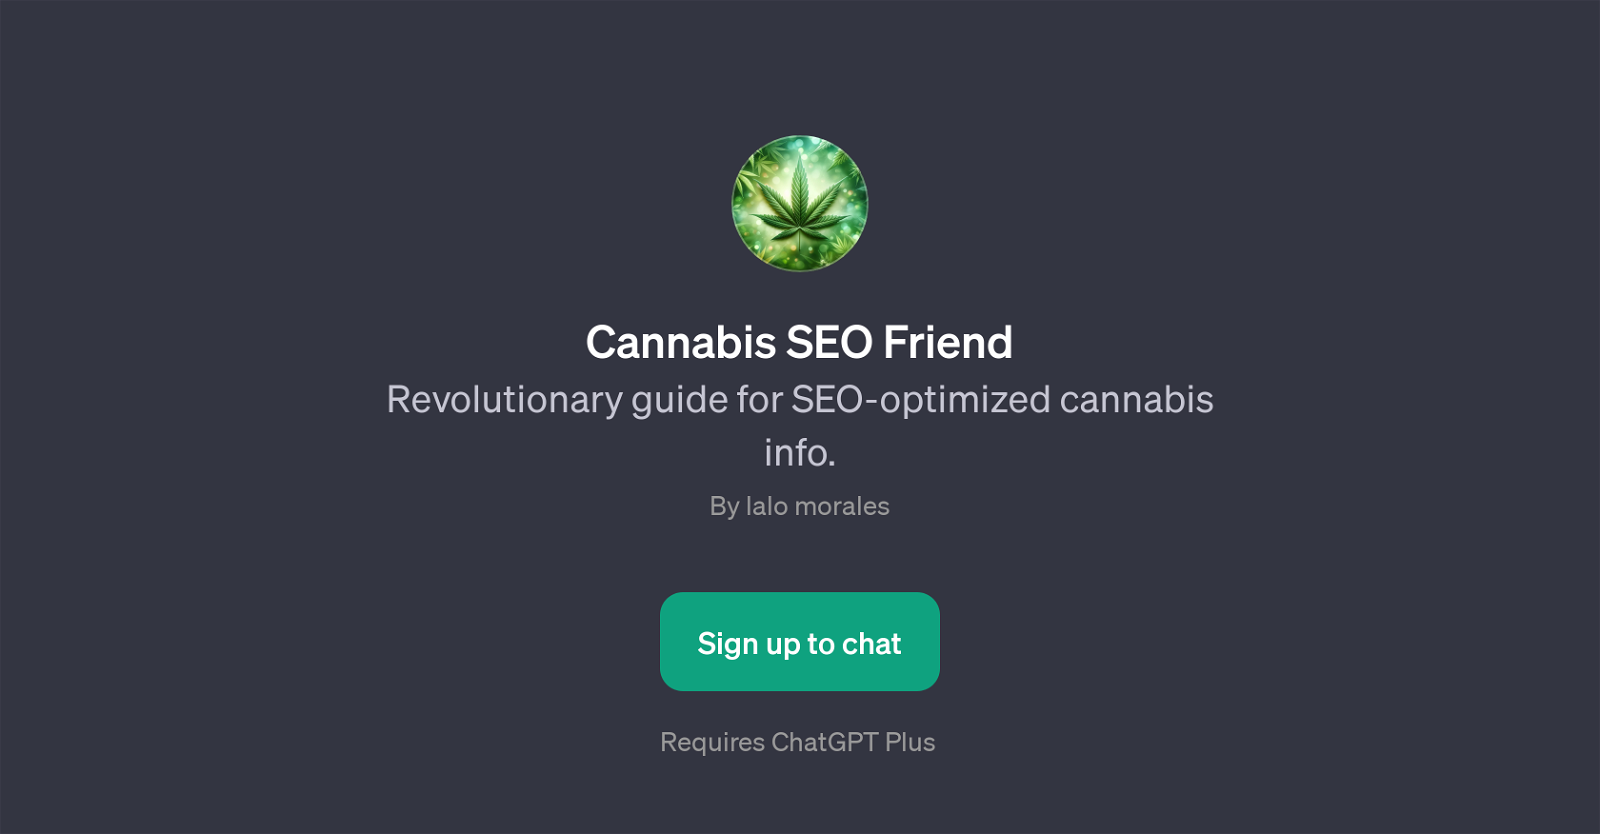 Cannabis SEO Friend website